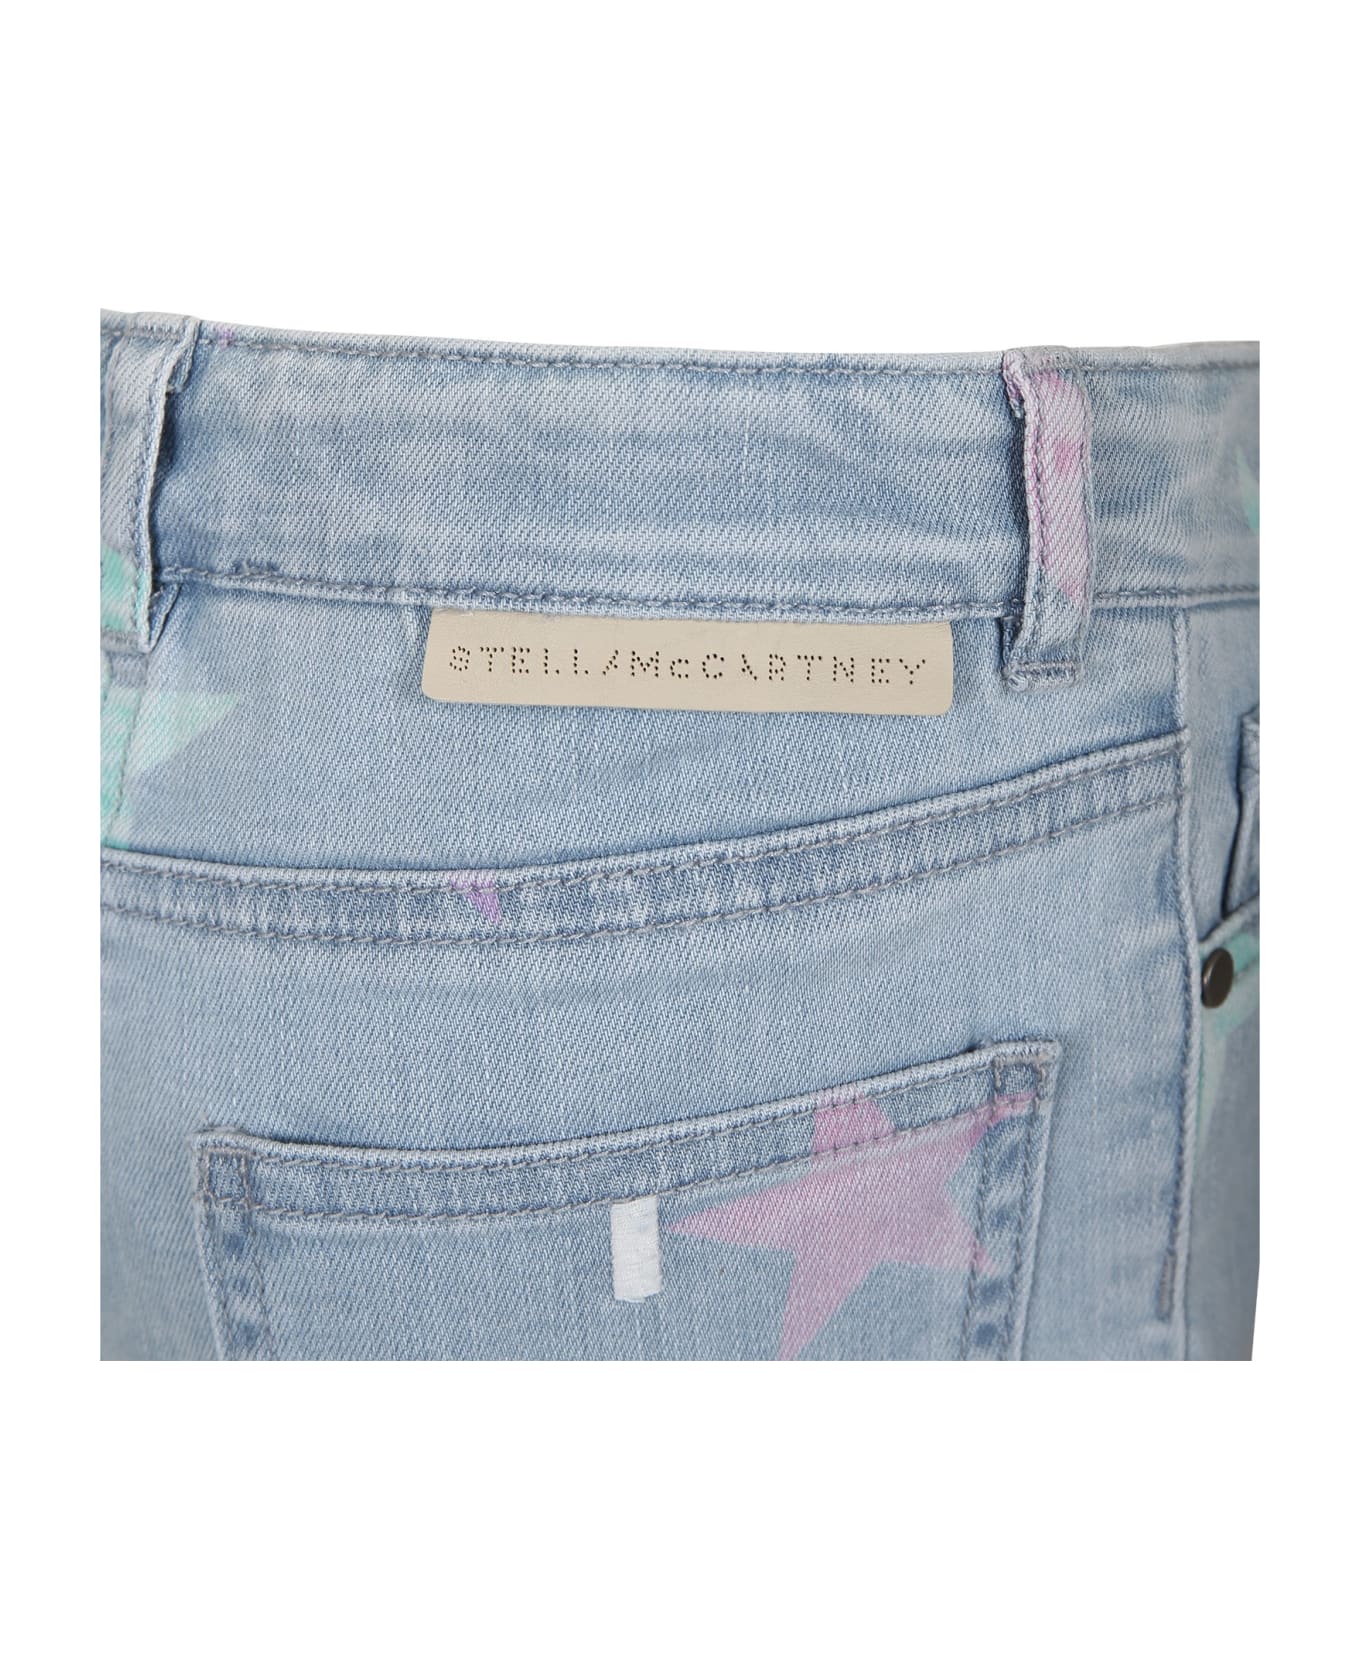 Stella McCartney Kids Denim Shorts For Girl With All-over Stars - Denim ボトムス